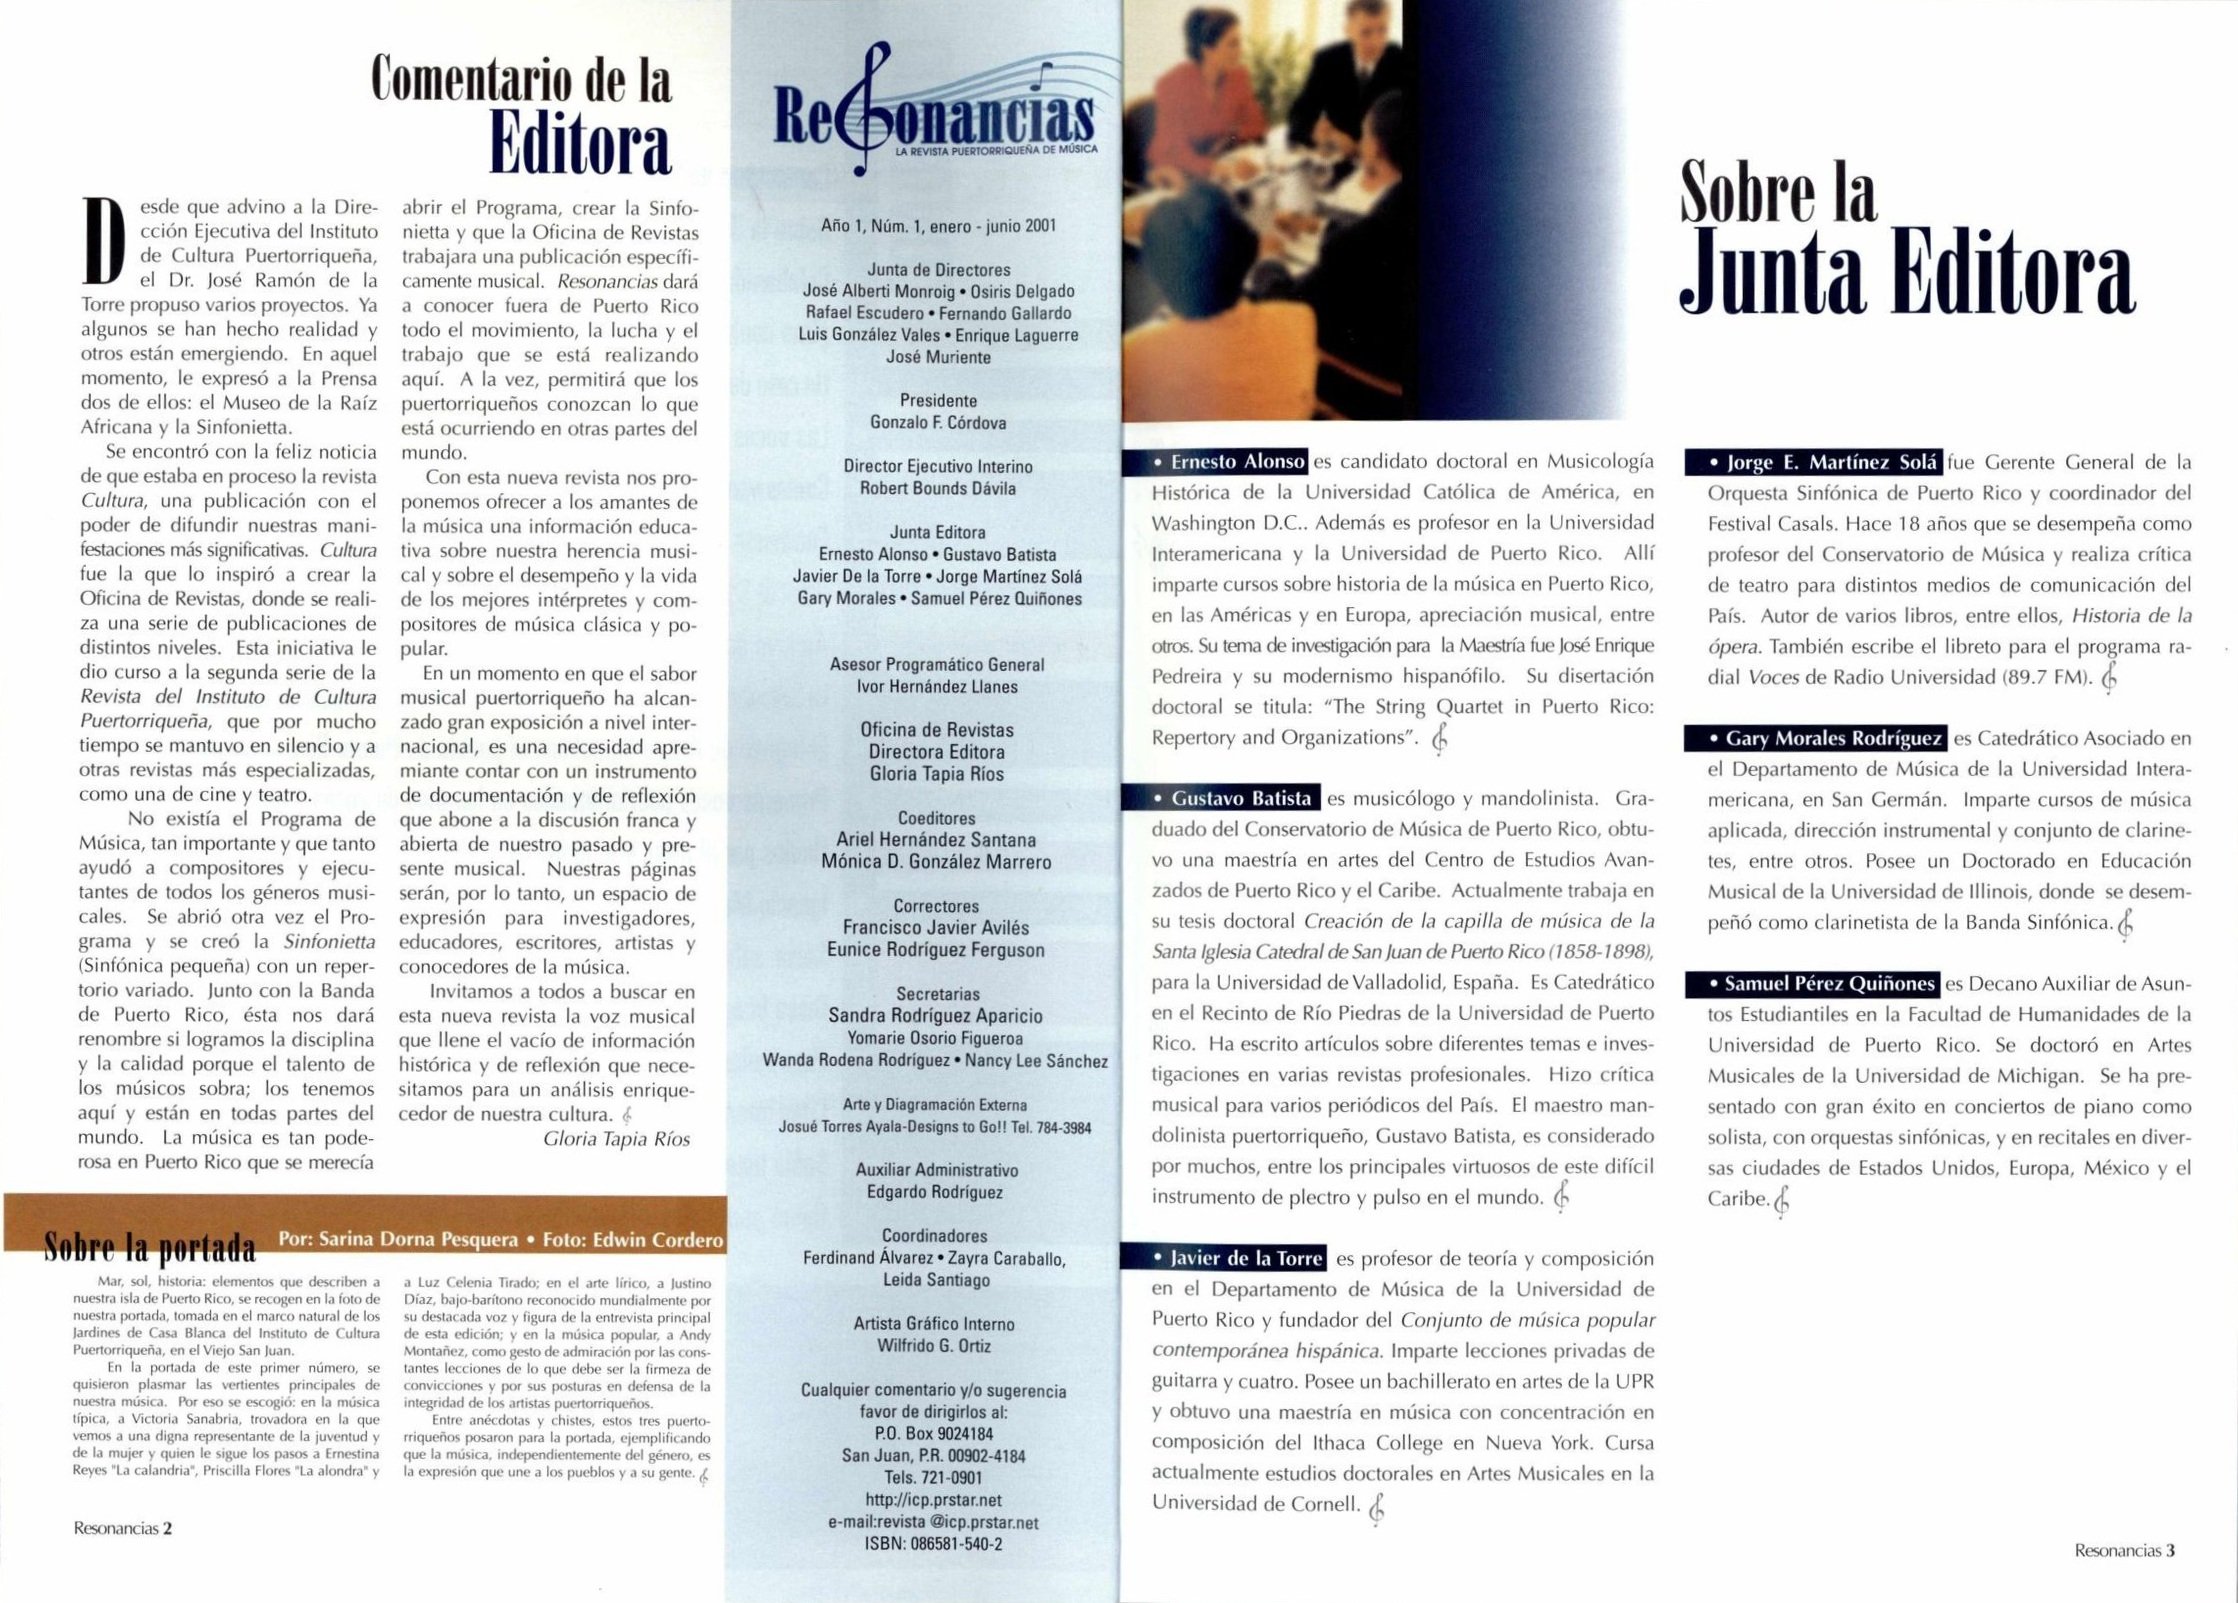 ICP_PUBLICACIONES_REVISTA+RESONANCIAS_1_1_2001+ENERO+A+JUNIO+2-3.jpg